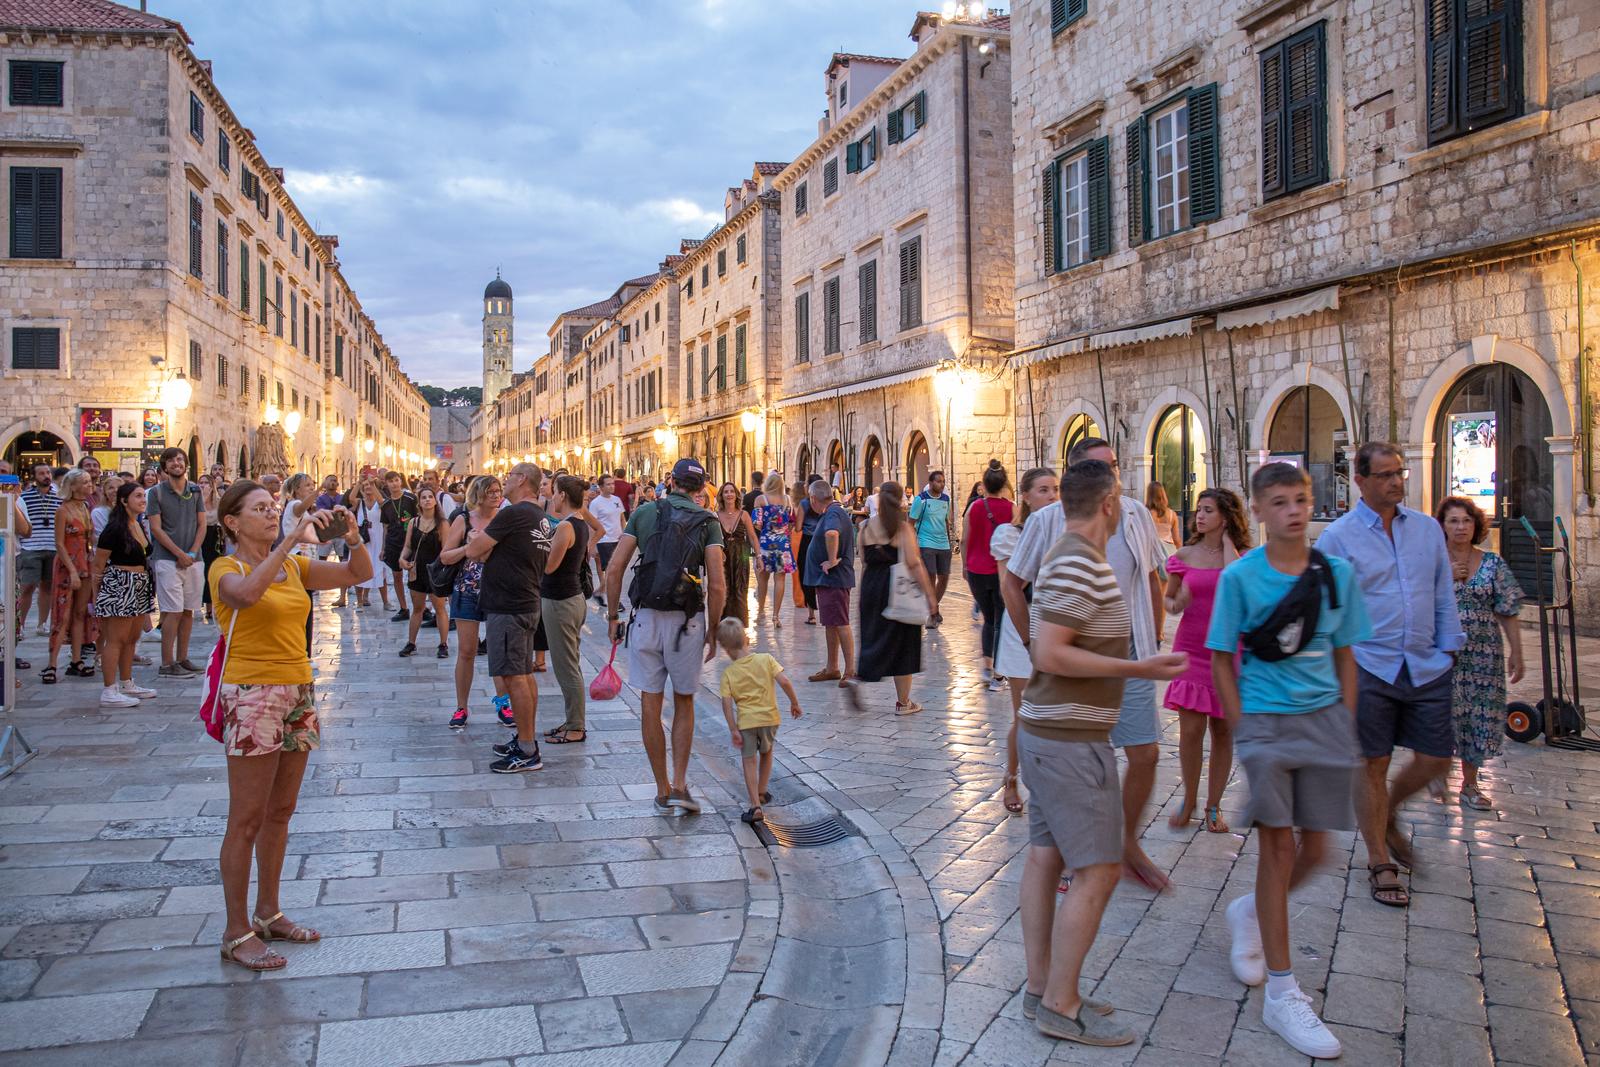 30.08.2022., Stradun, Dubrovnik - Predvecerje na Stradunu. Photo: Grgo Jelavic/PIXSELL